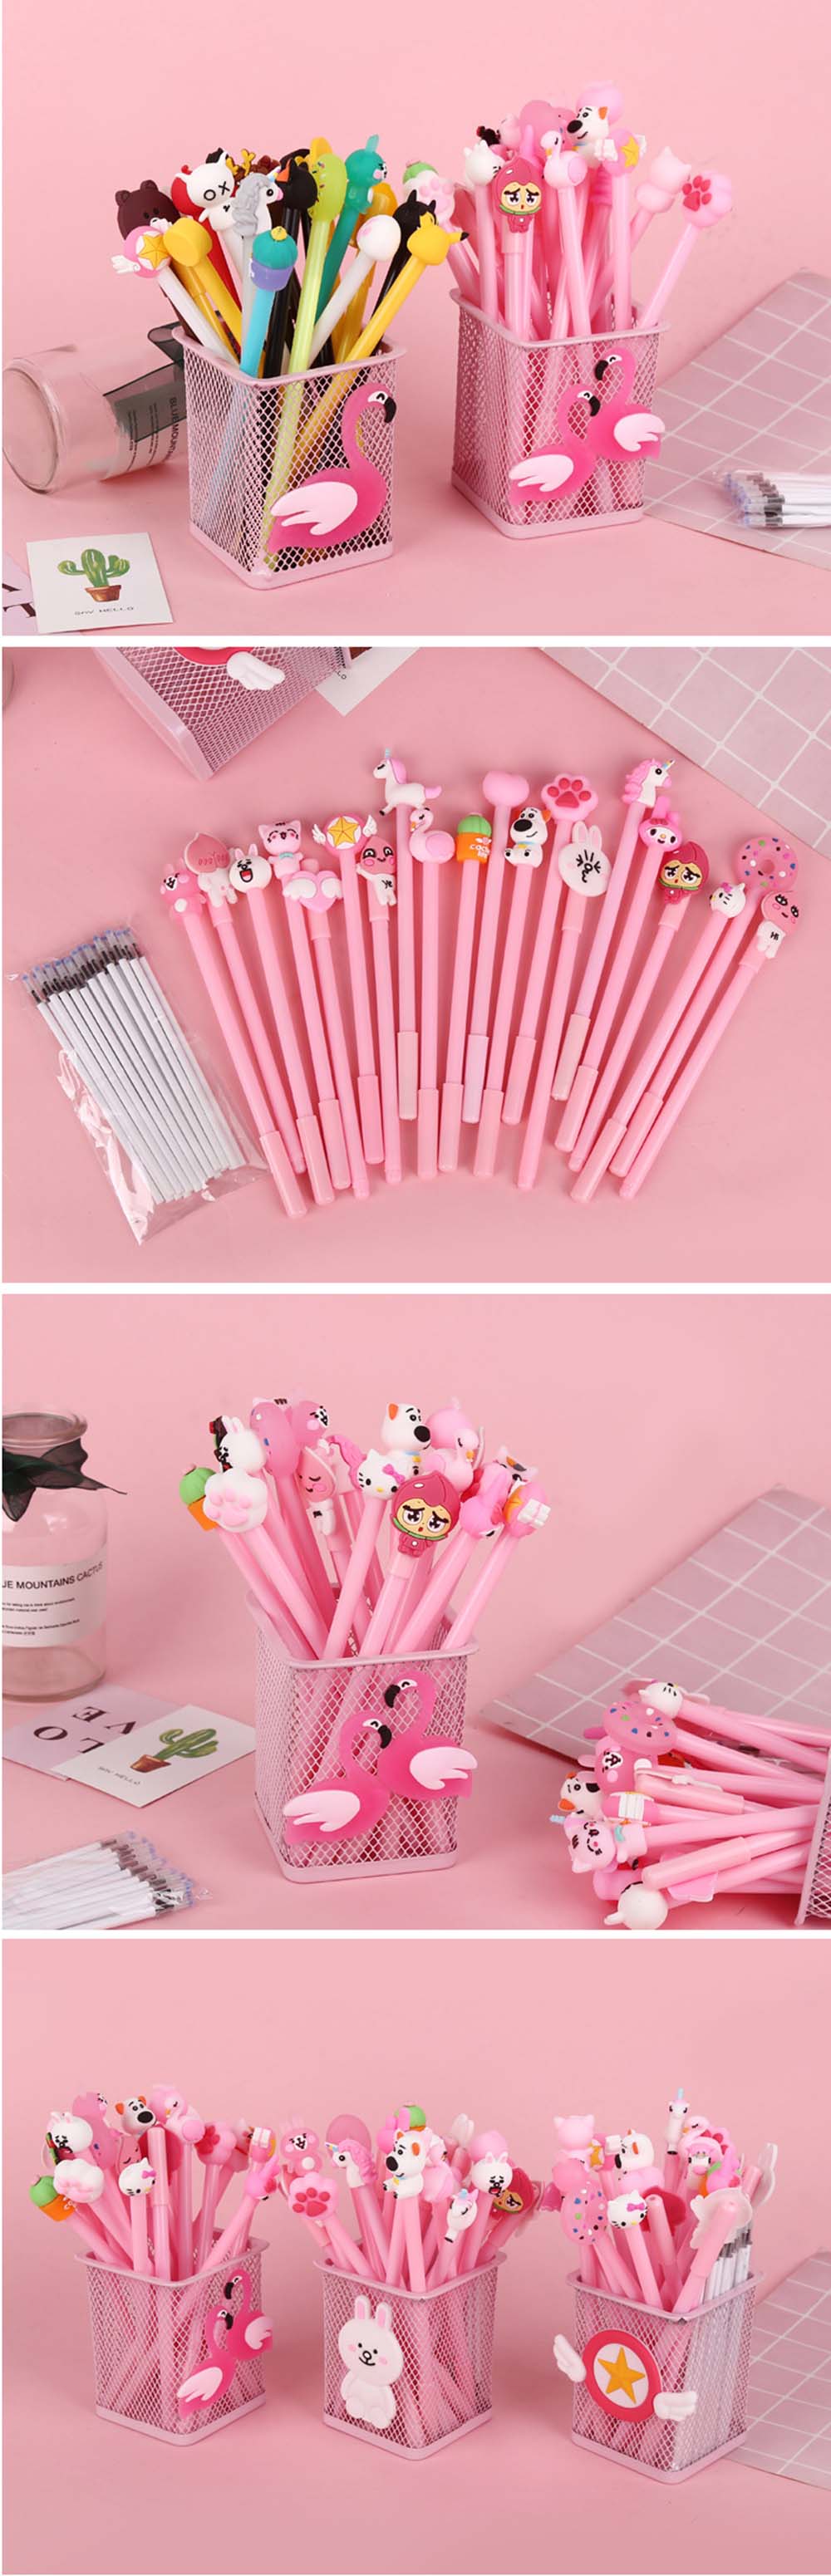 Creative-20-Gel-Pen-20-Pen-Refill-1-Cartoon-Pink-Pen-Holder-Stationery-Set-school-Supplies-Gift-Set-1358418-2